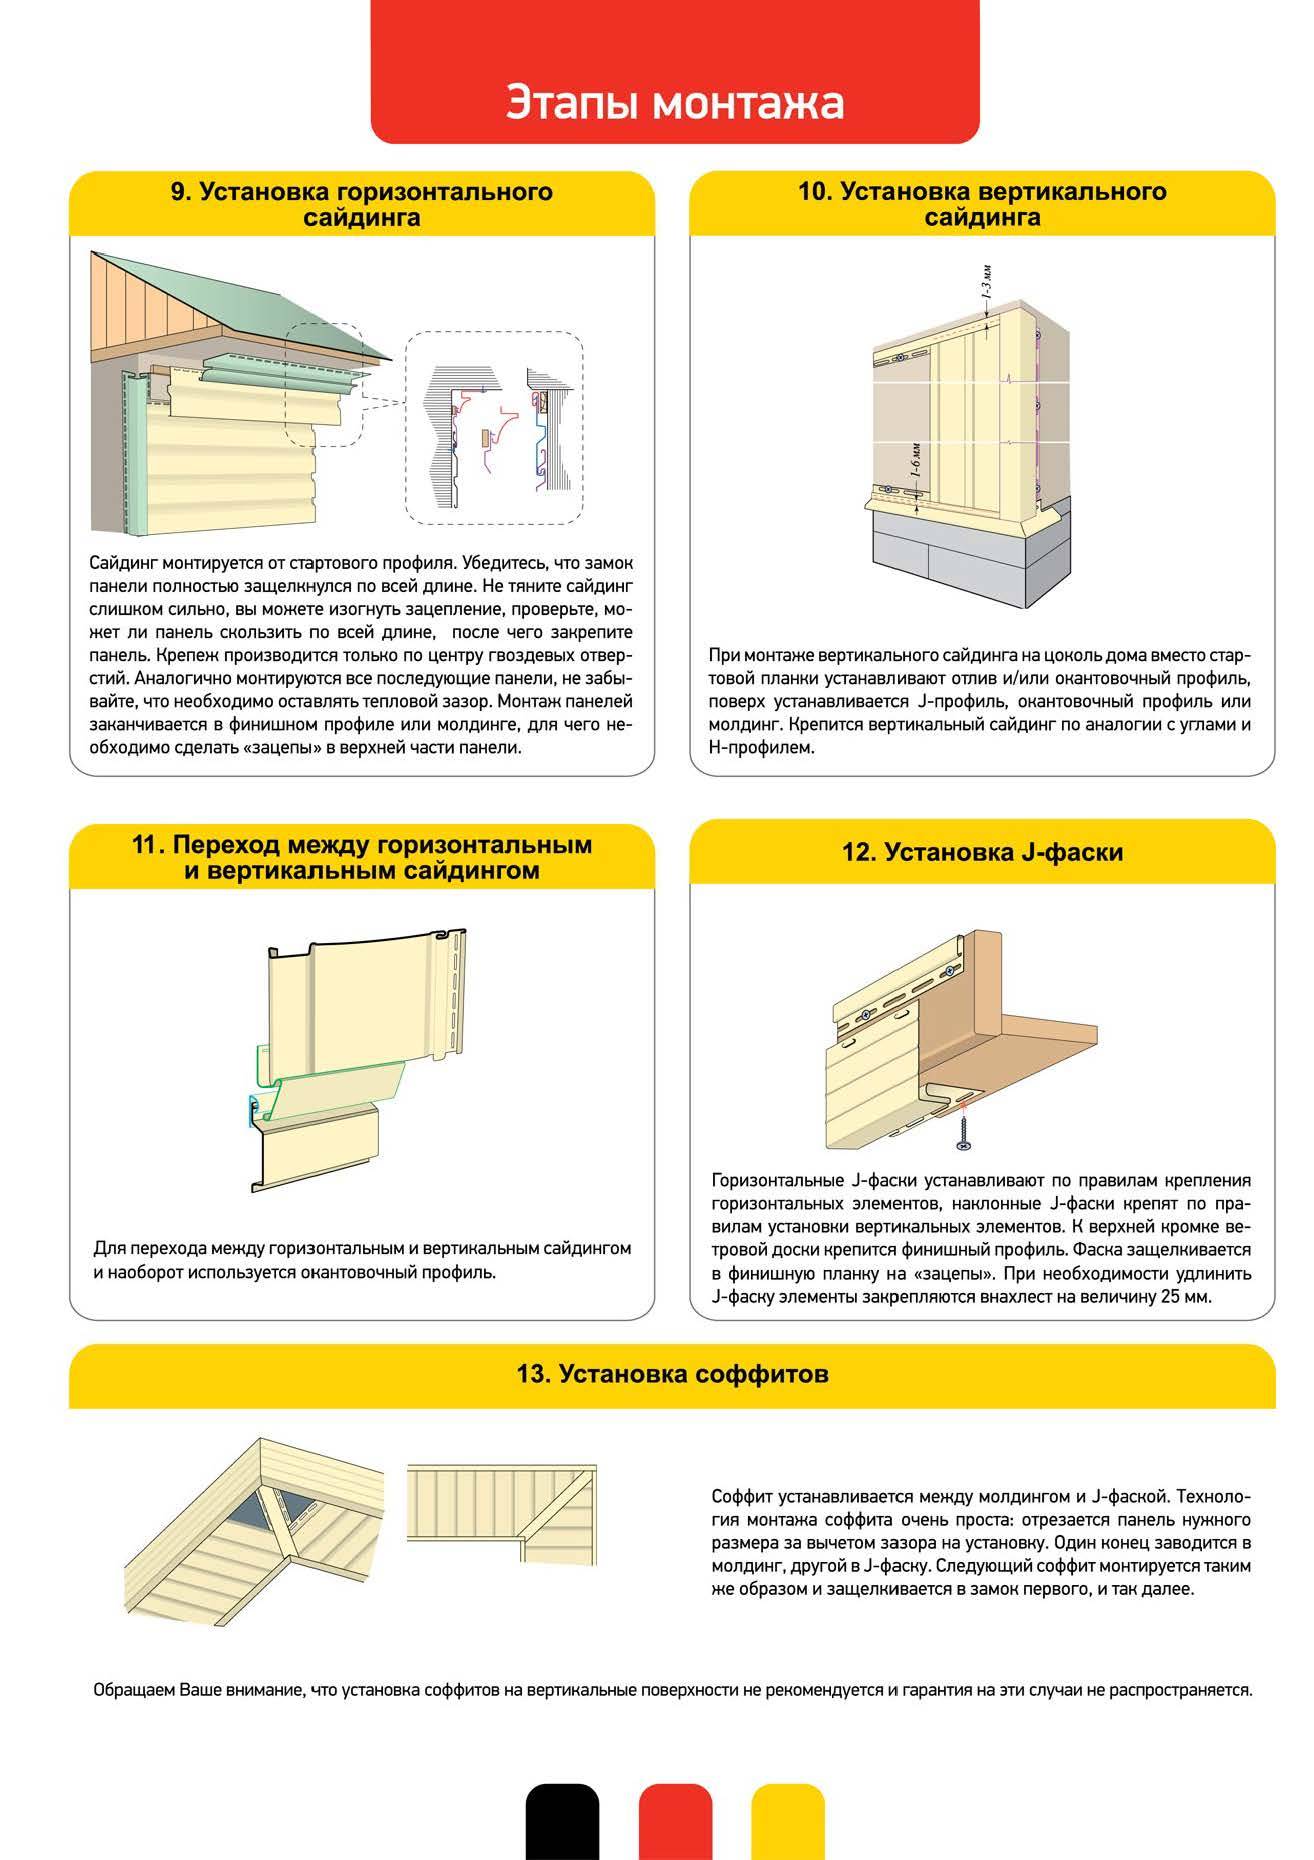 Фасадные панели деке (docke r) для наружной отделки дома: инструкция по монтажу панелей декер, виды и технические характеристики